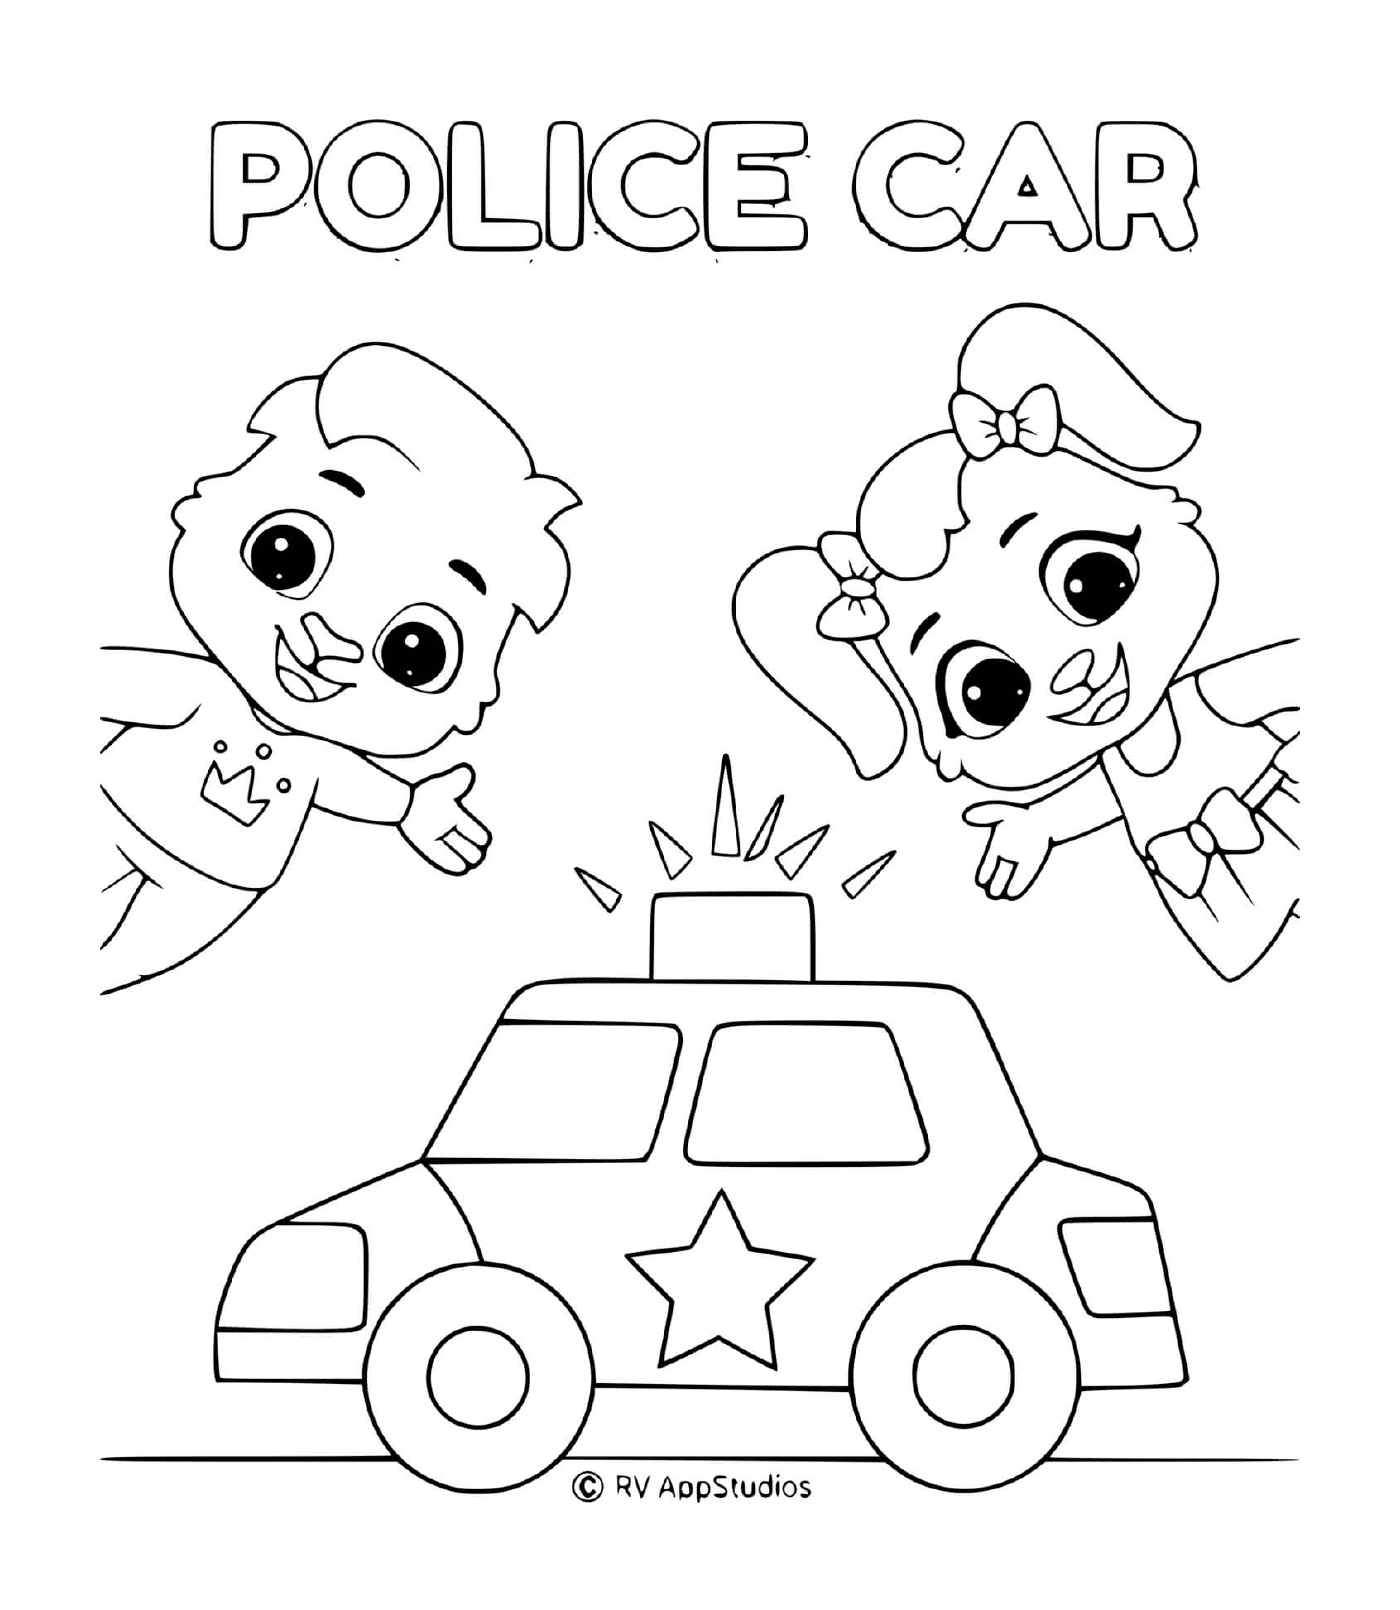  Polícia de carro, criança feliz 